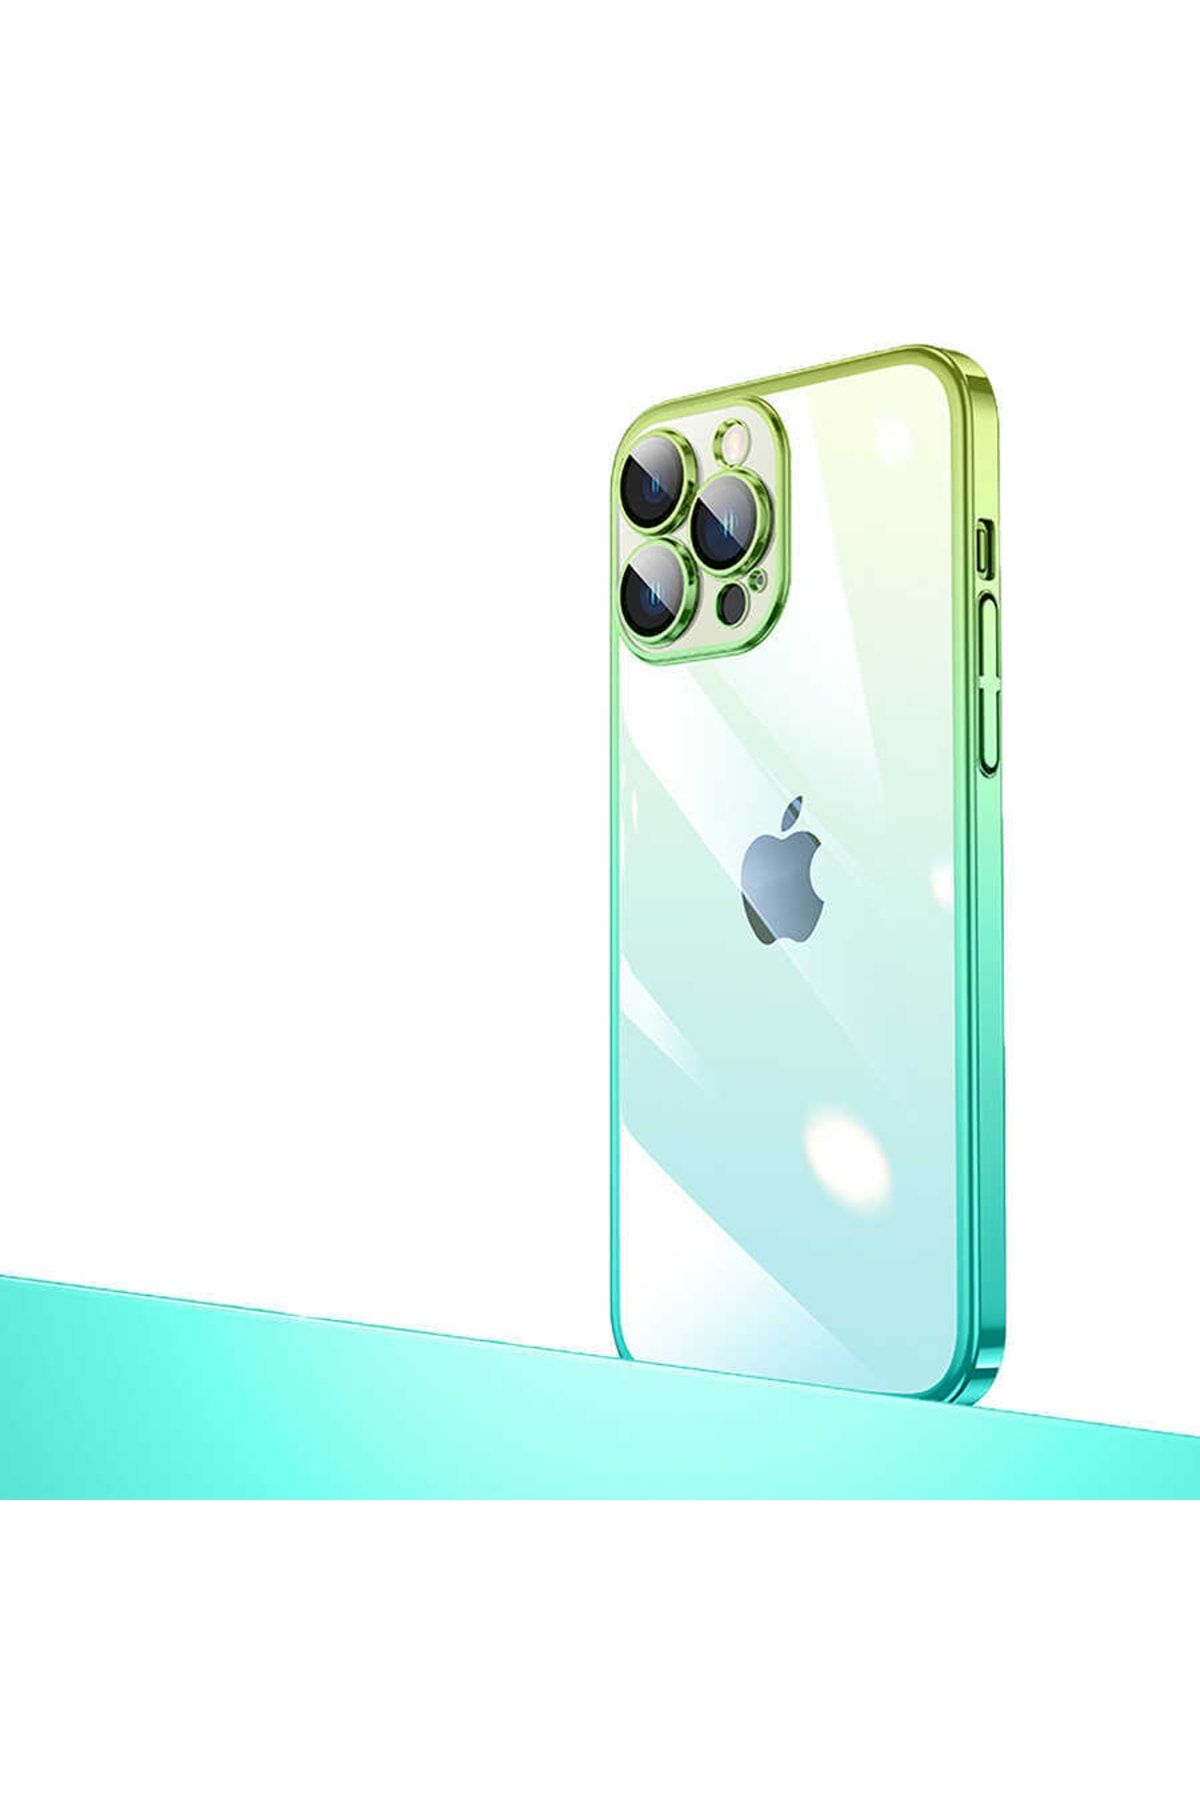 Zore Apple Iphone 12 Pro Uyumlu Kılıf Parlak Renk Geçişli Kamera Korumalı Senkron Kapak (yeşil-mavi)